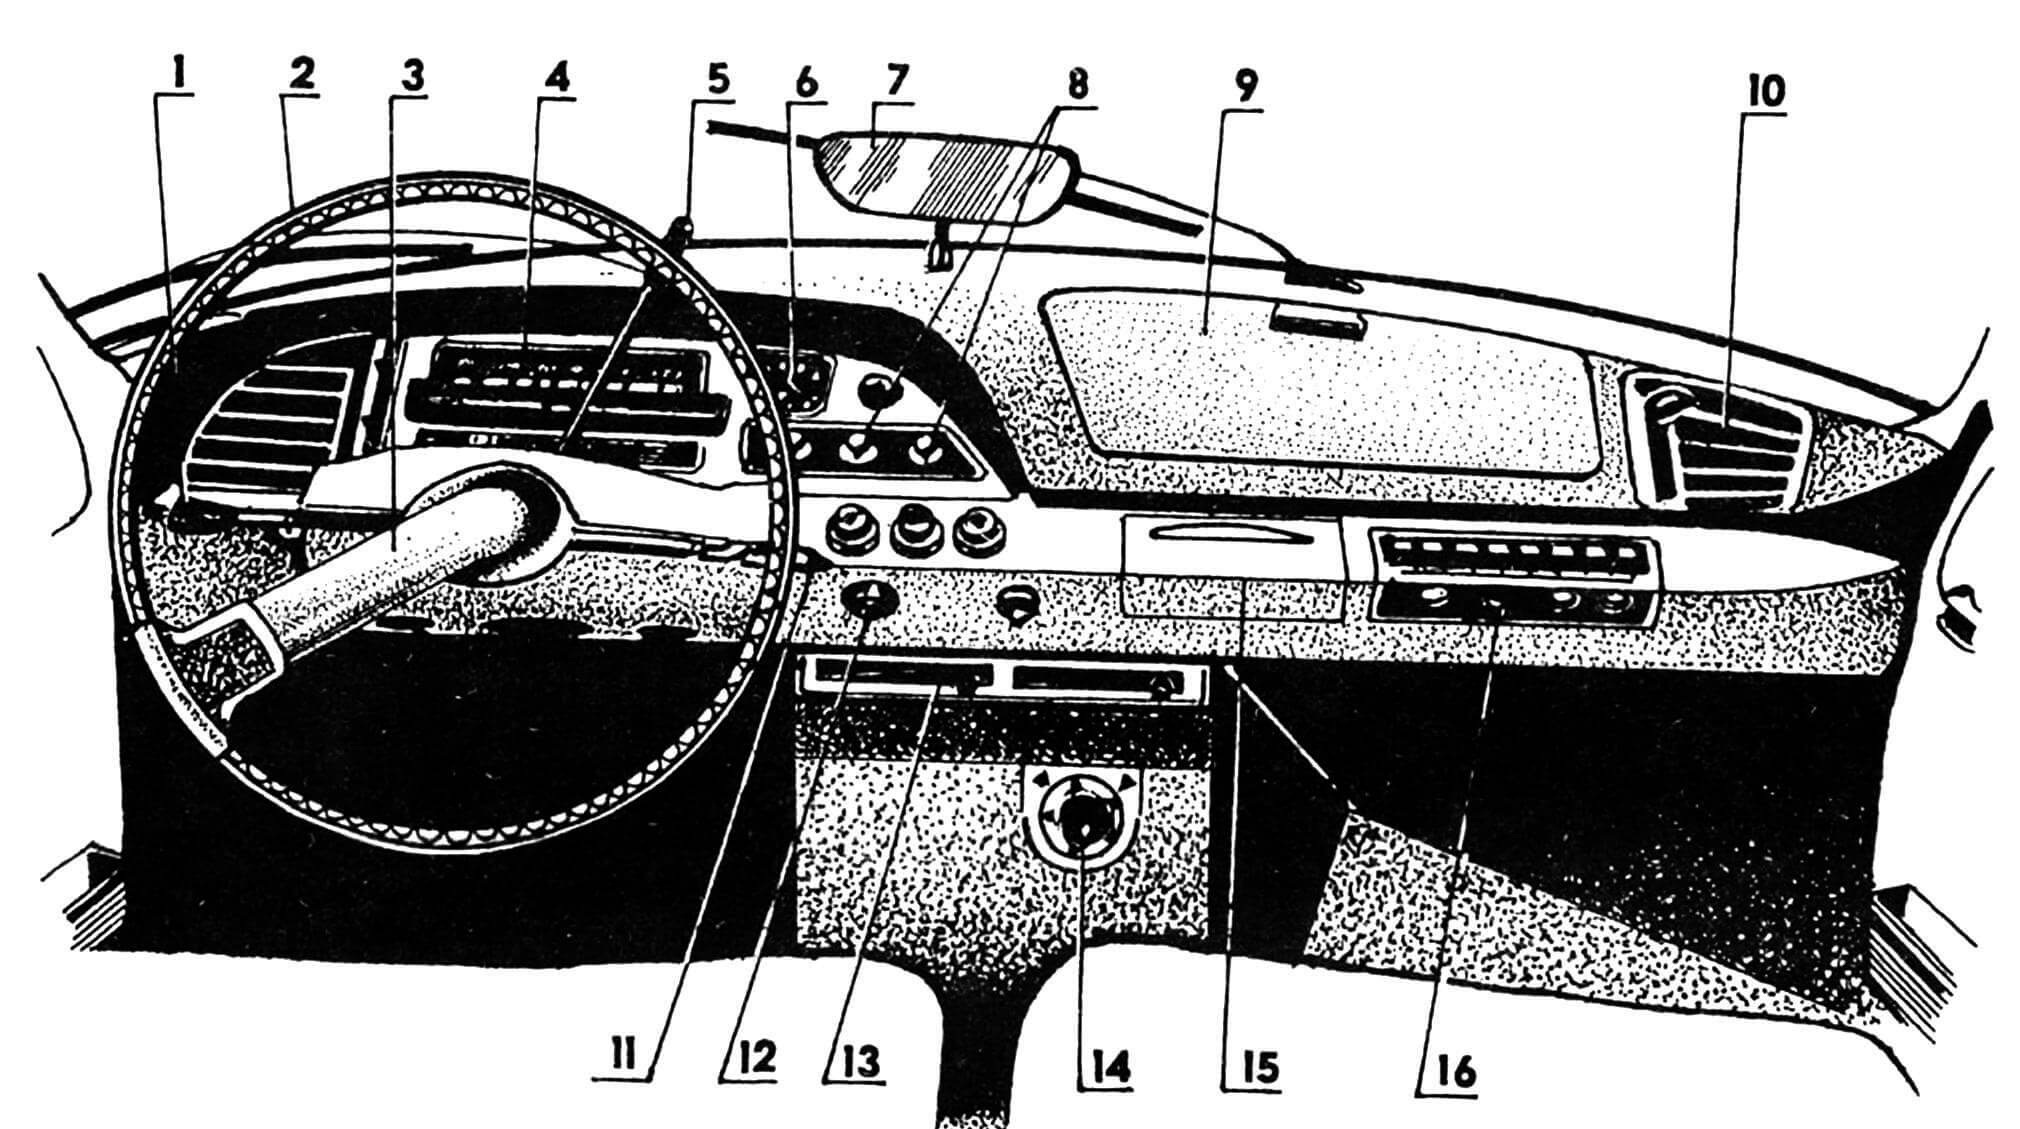 Панель приборов: 1 — переключатель универсальный; 2 — колесо рулевое; 3 — спица рулевого колеса; 4 — спидометр; 5 — рычаг переключения передач; 6 — часы; 7 — зеркало заднего вида; 8 — ручки управления системой отопления и вентиляции; 9 — крышка перчаточного ящика; 10 — сопло обдува воздухом; 11 — ручка управления стеклоочистителями; 12 — замок зажигания; 13 — рычаг управления гидропневматической подвеской; 14 — регулятор воздуха «теплый — холодный»; 15 — пепельница; 16 — радиоприемник.